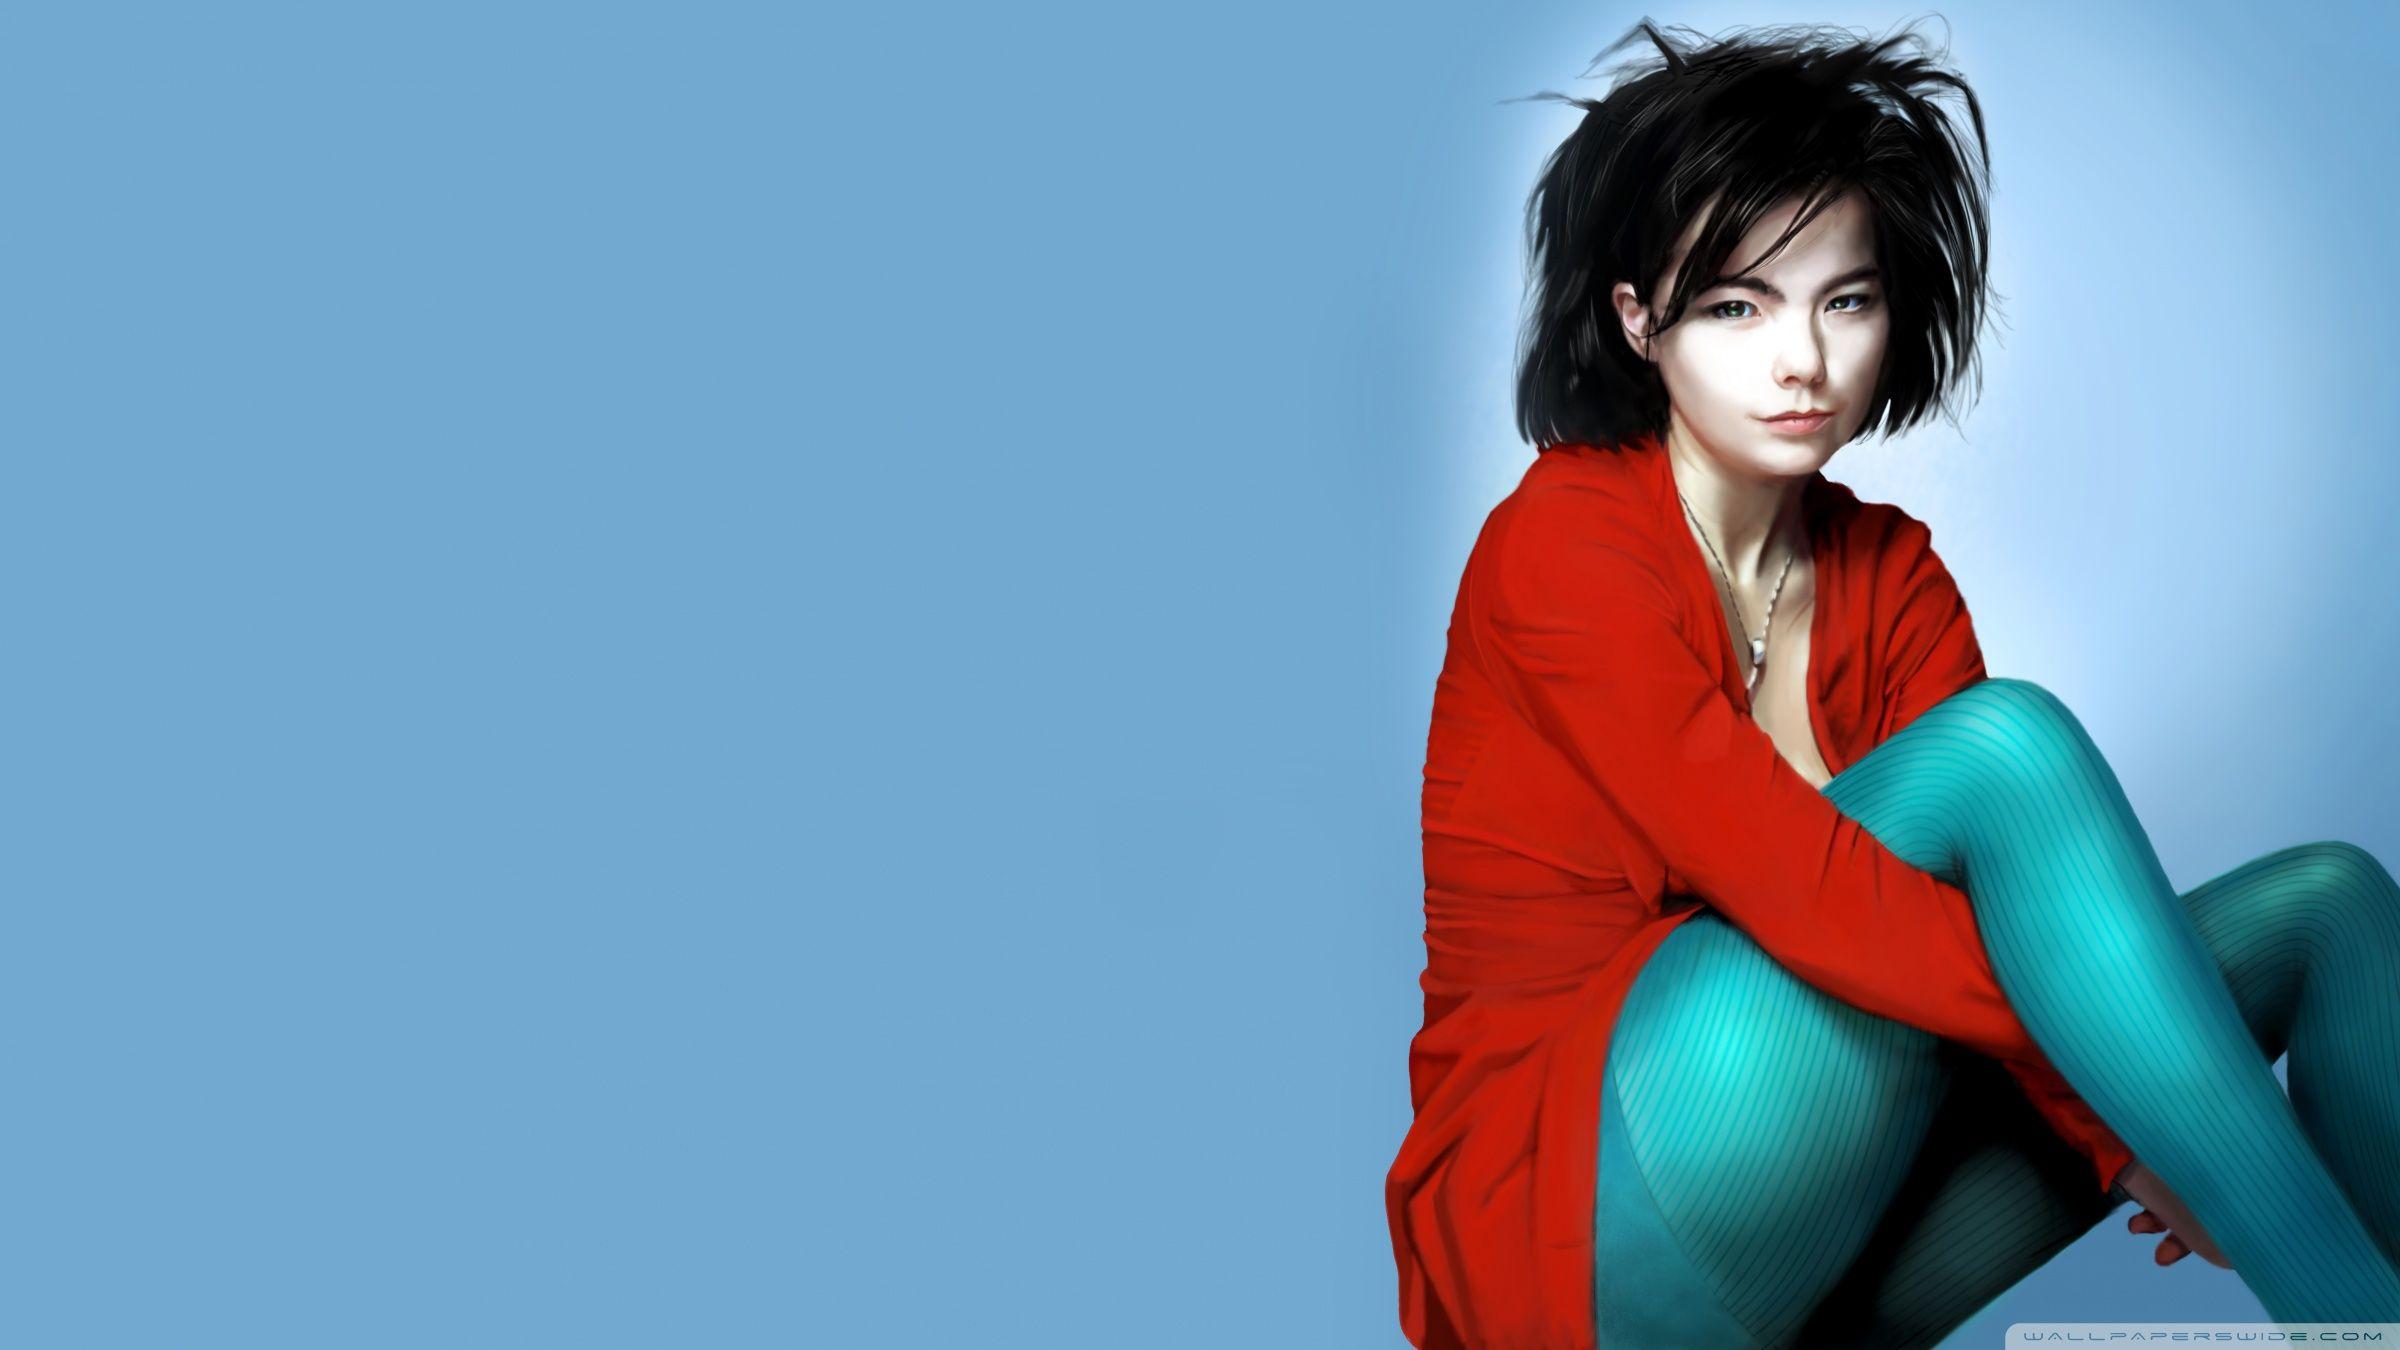 Björk Painting HD desktop wallpaper, Fullscreen, Mobile, Dual